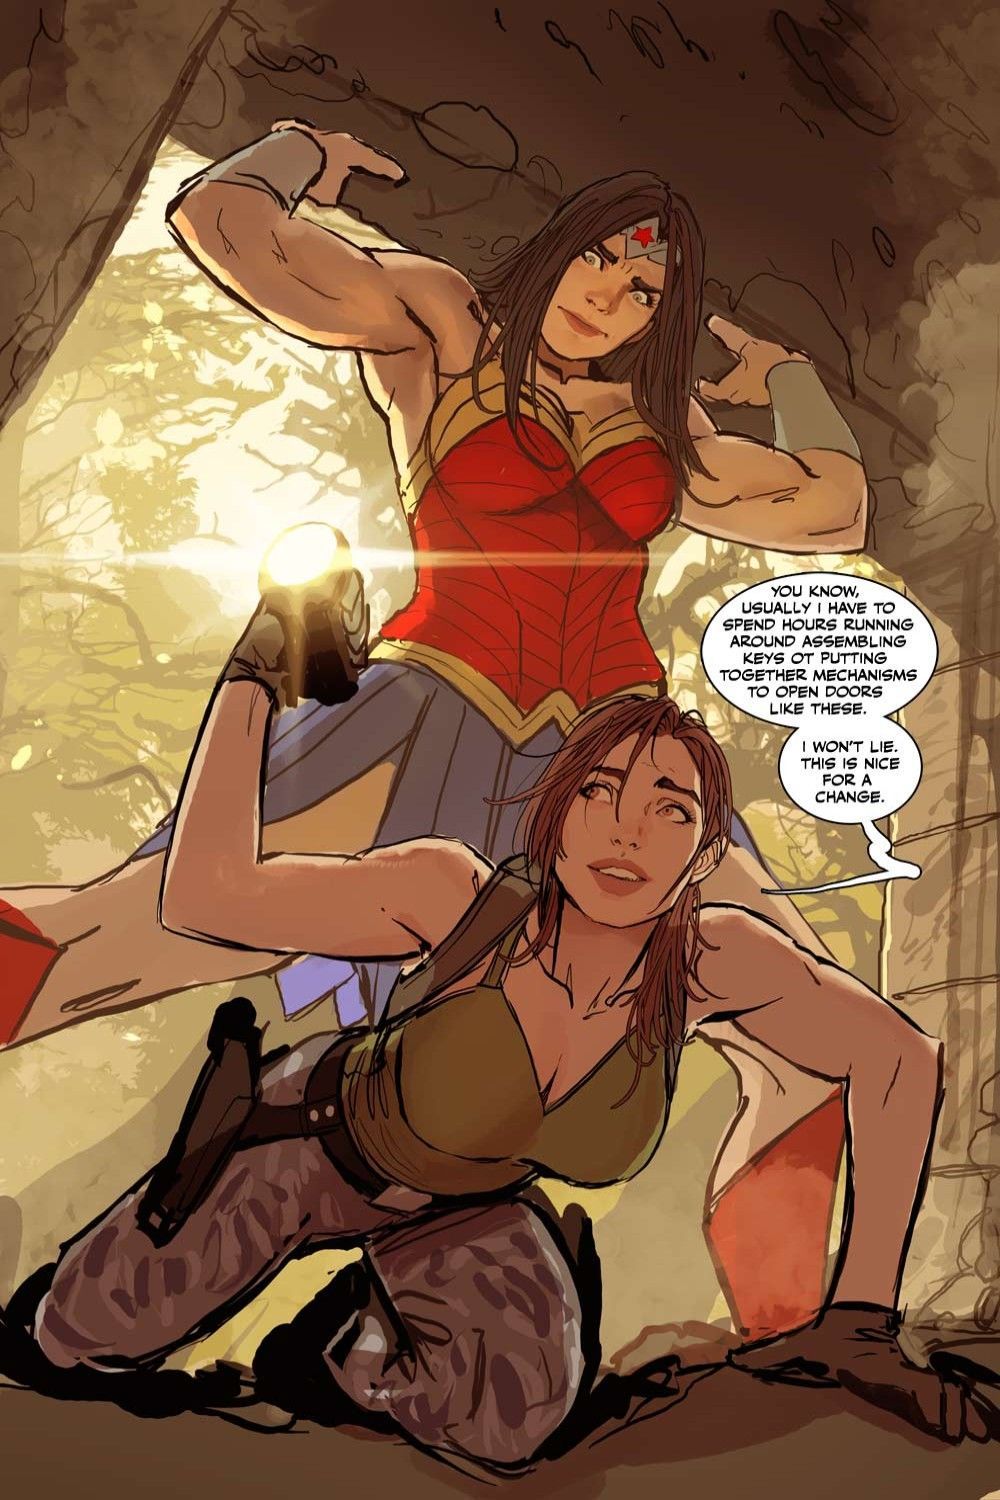 Diana X Lara: 10 immagini fan di Wonder Woman e Tomb Raider che amiamo